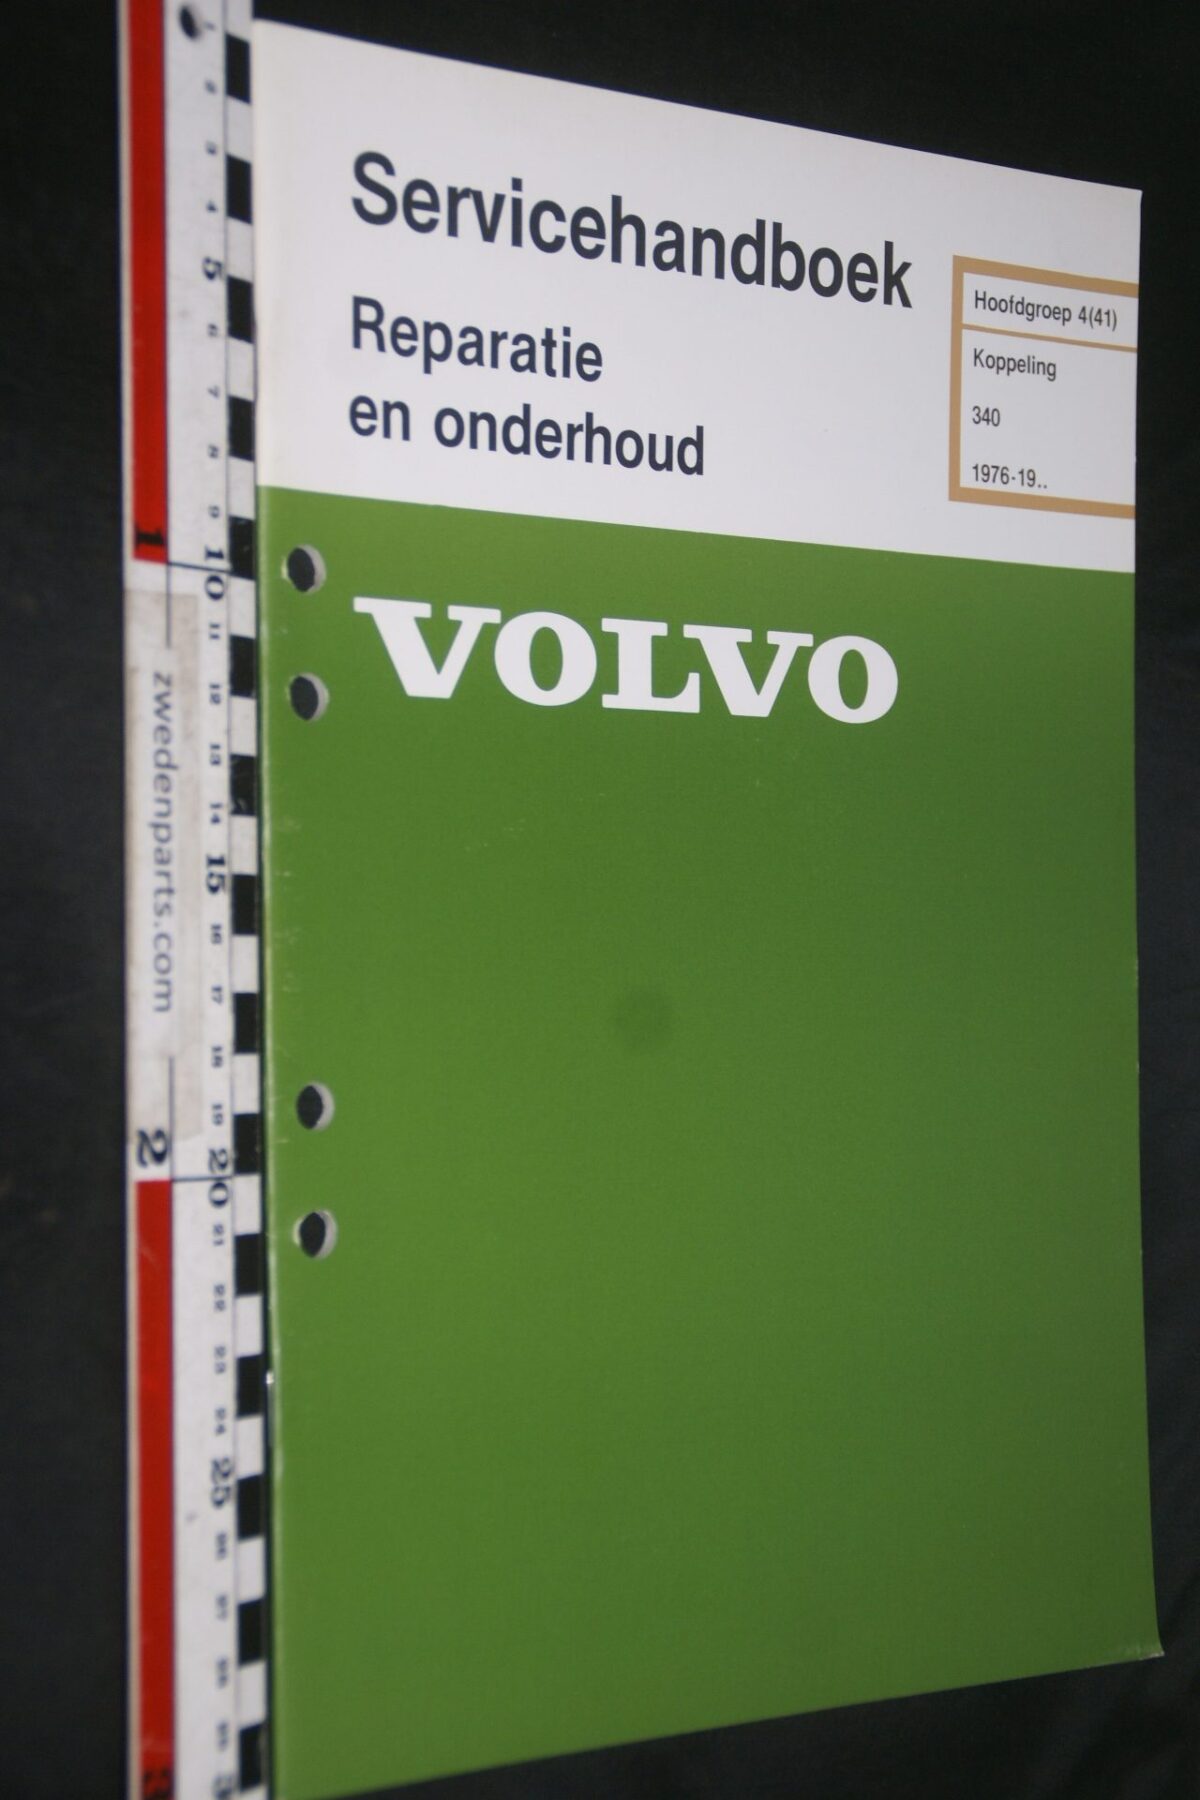 DSC07221 1981 origineel Volvo 340 servicehandboek  4(41) koppeling 1 van 800 TP 12429-3